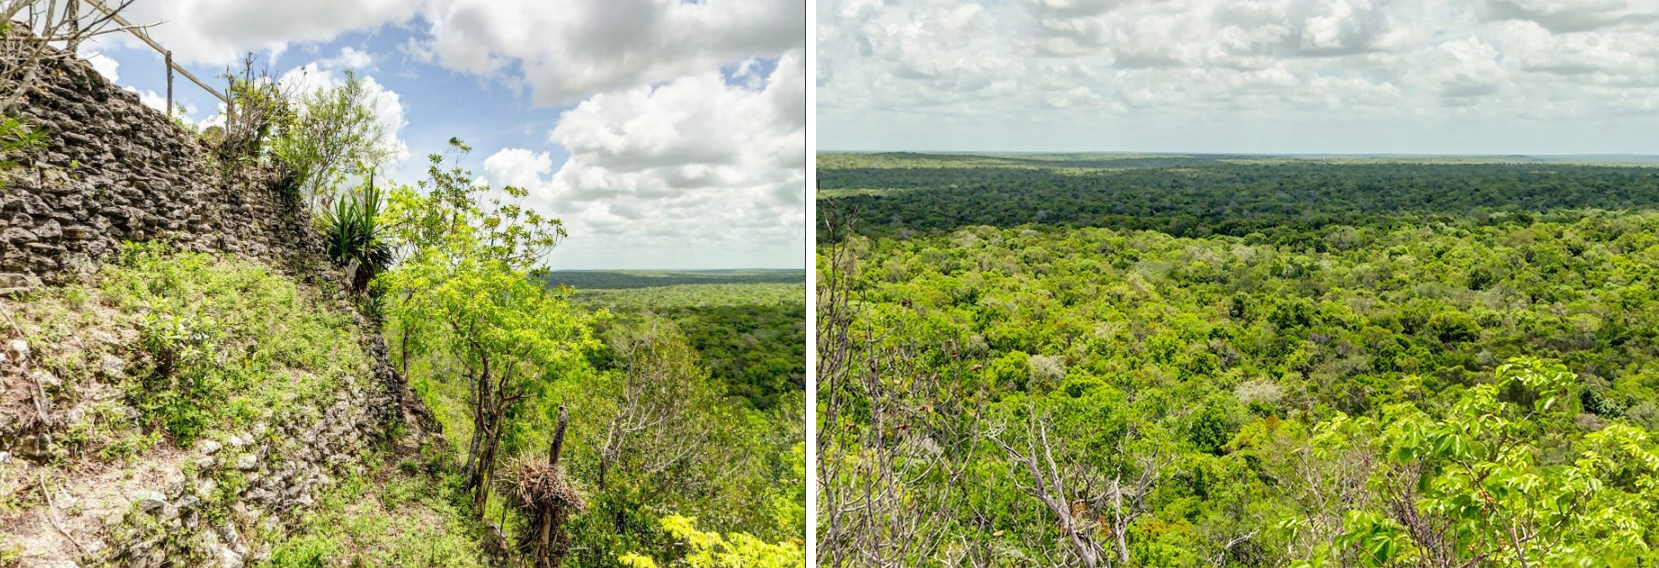 Когда учёные сканировали лазером джунгли около древнего города майя Эль-Мирадор, то обнаружили тысячи новых руин и сеть дорог